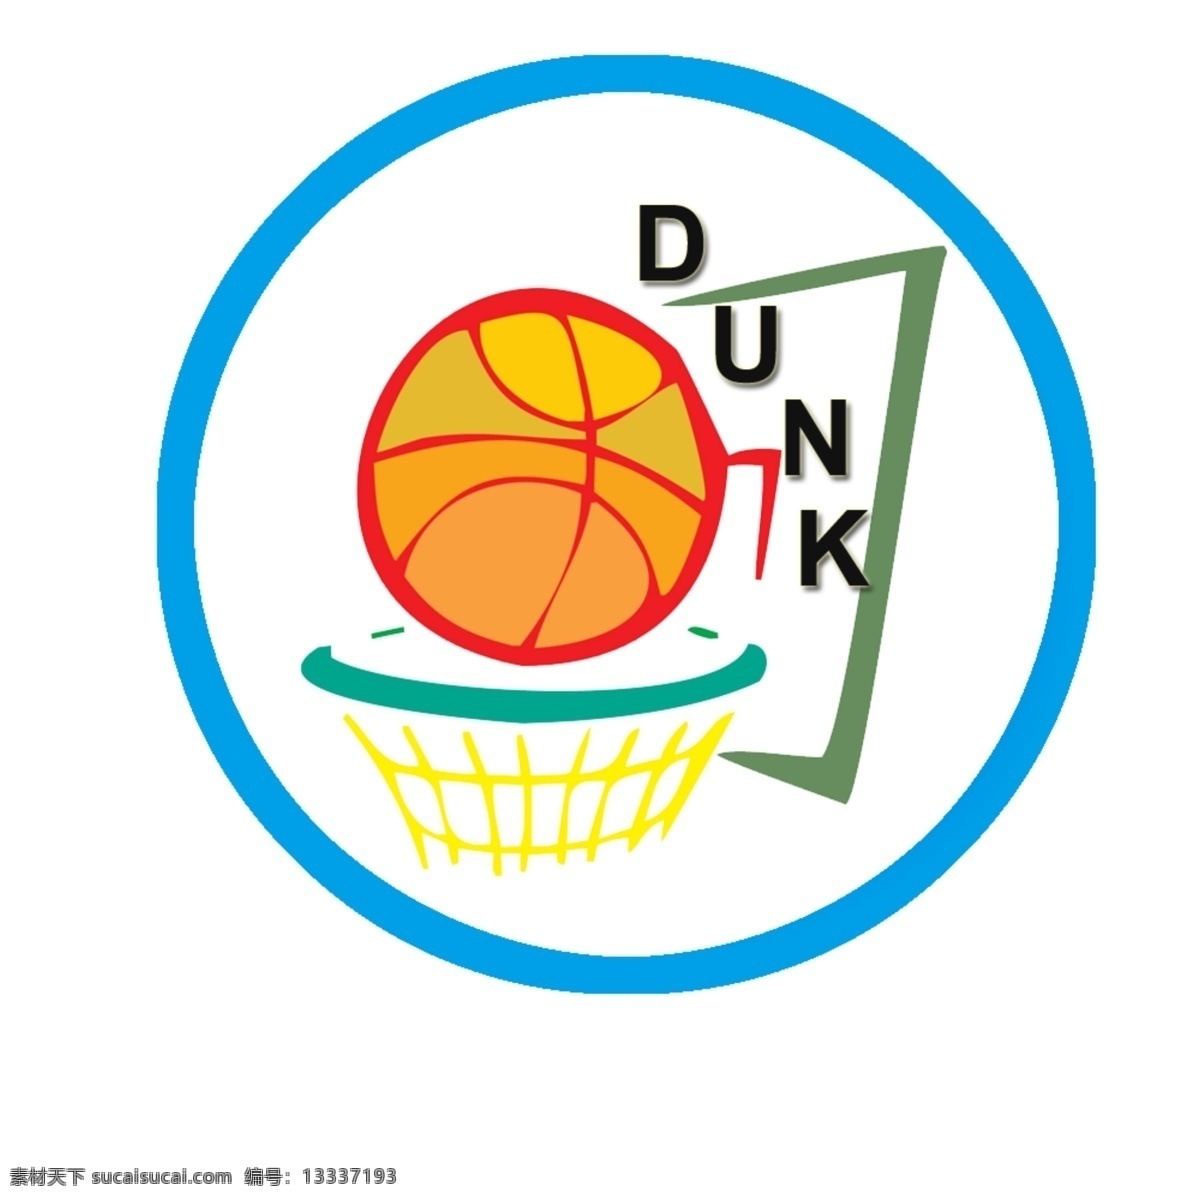 篮球 协会 徽标 源文件 模板下载 篮球协会徽标 psd源文件